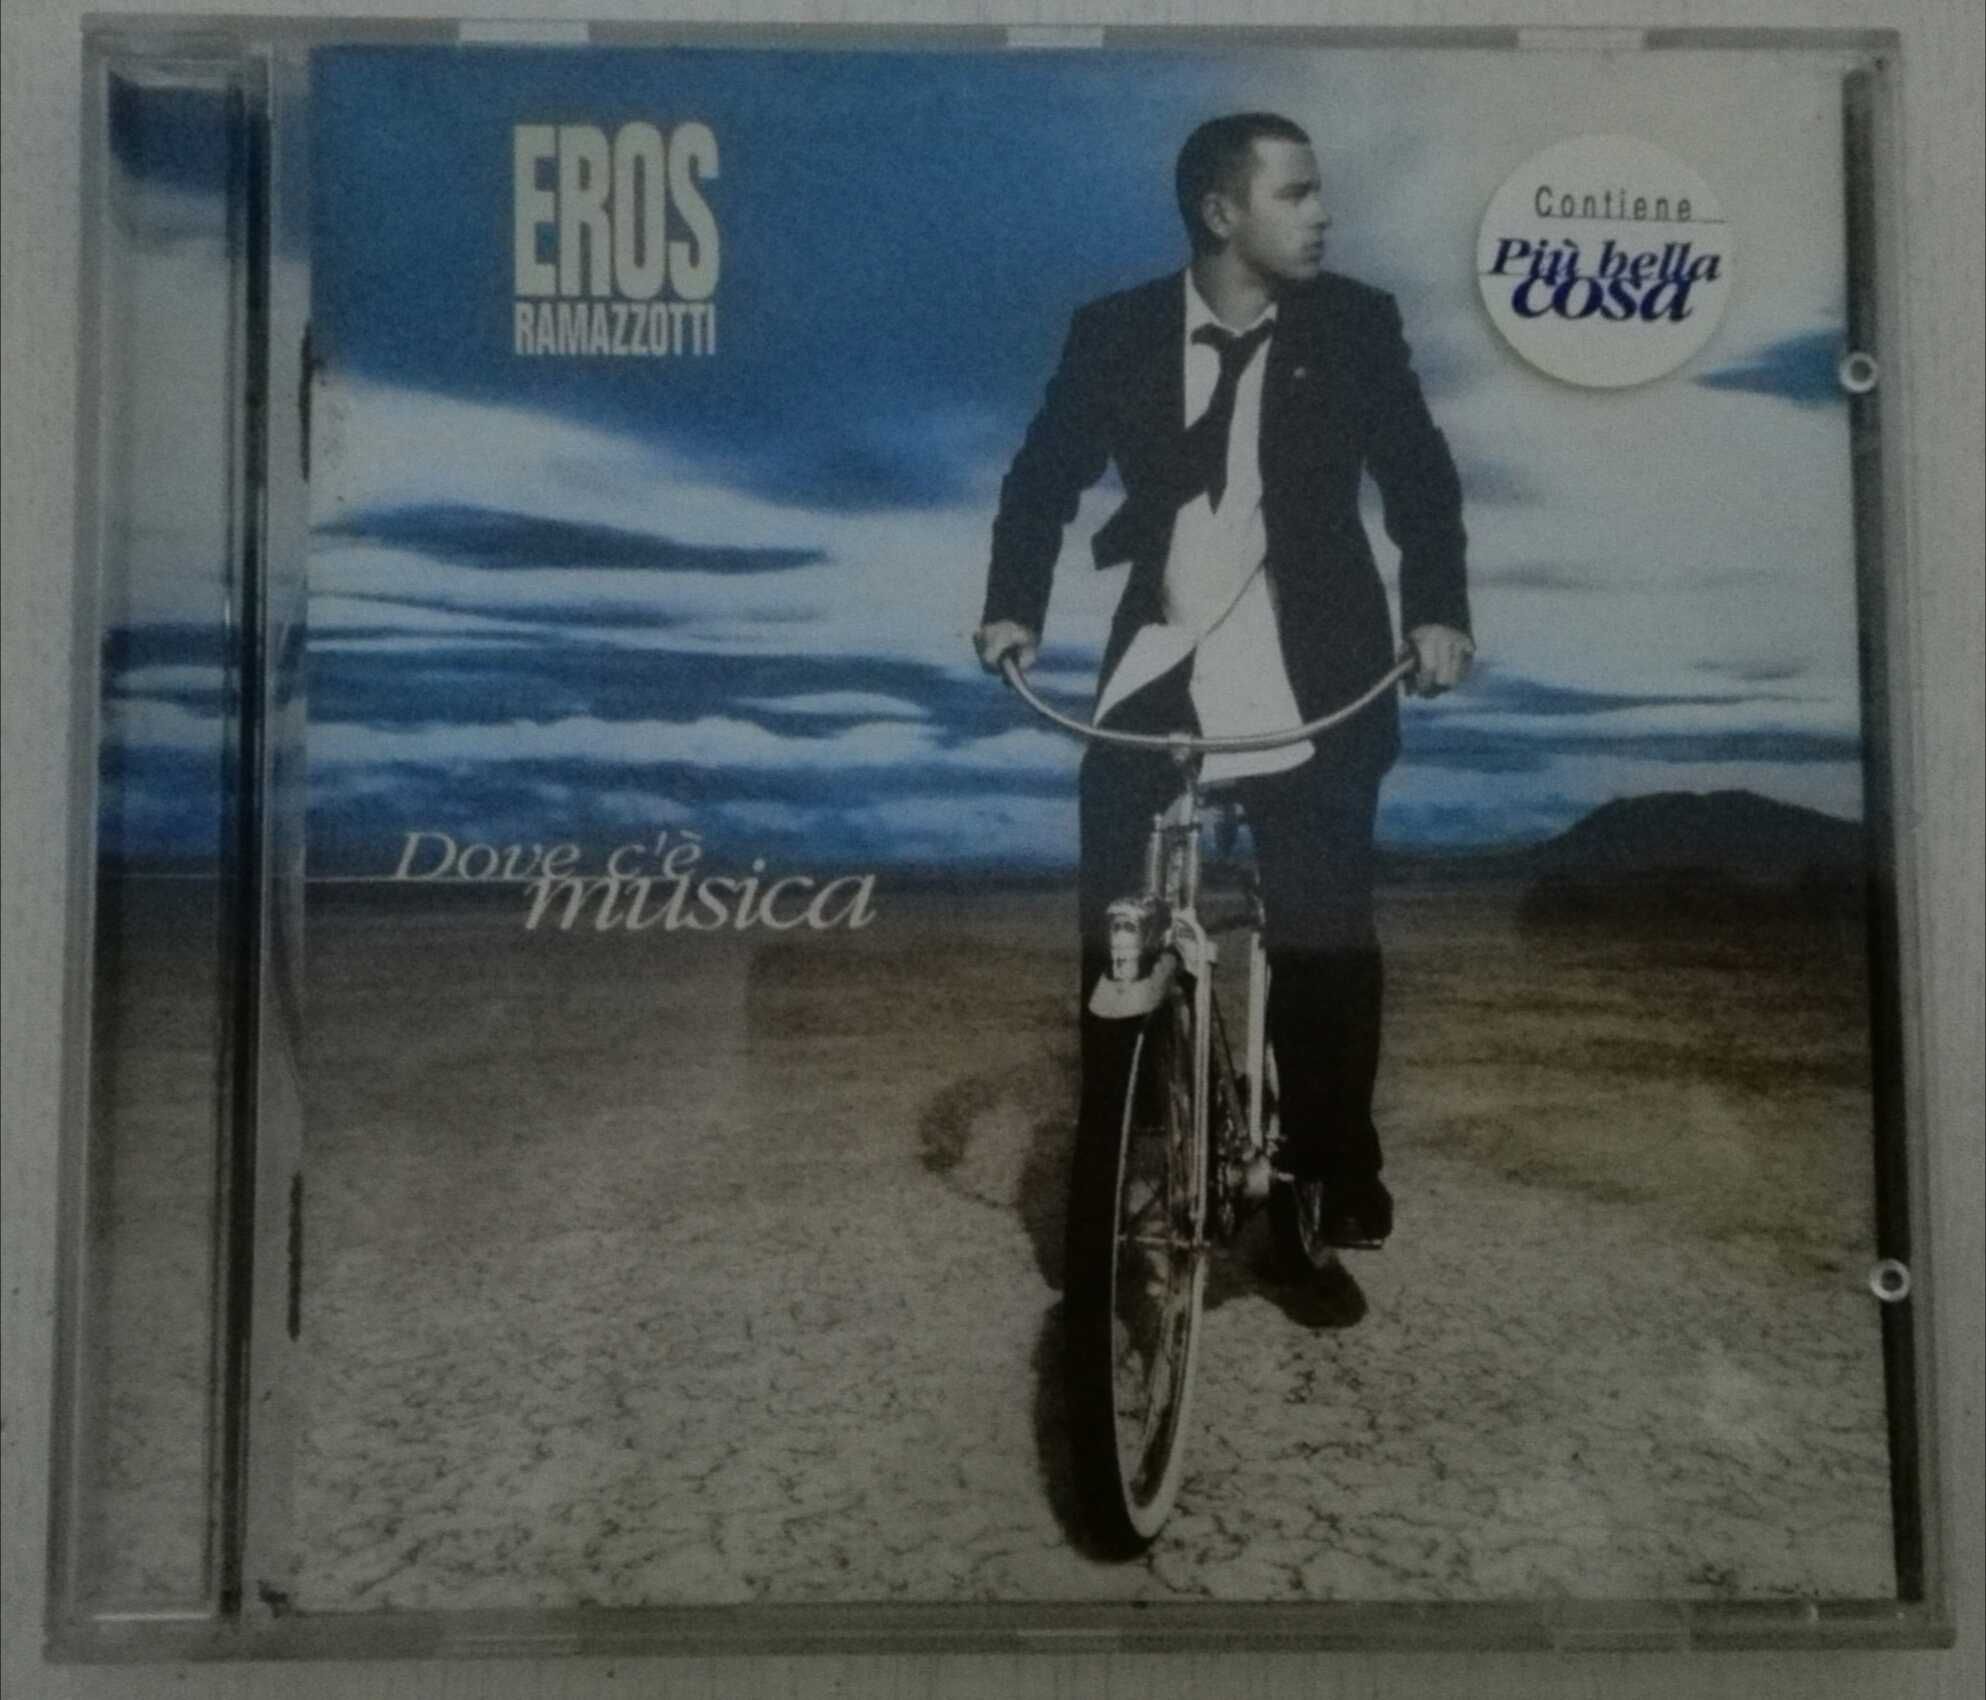 CD - Eros Ramazzotti - portes incluídos